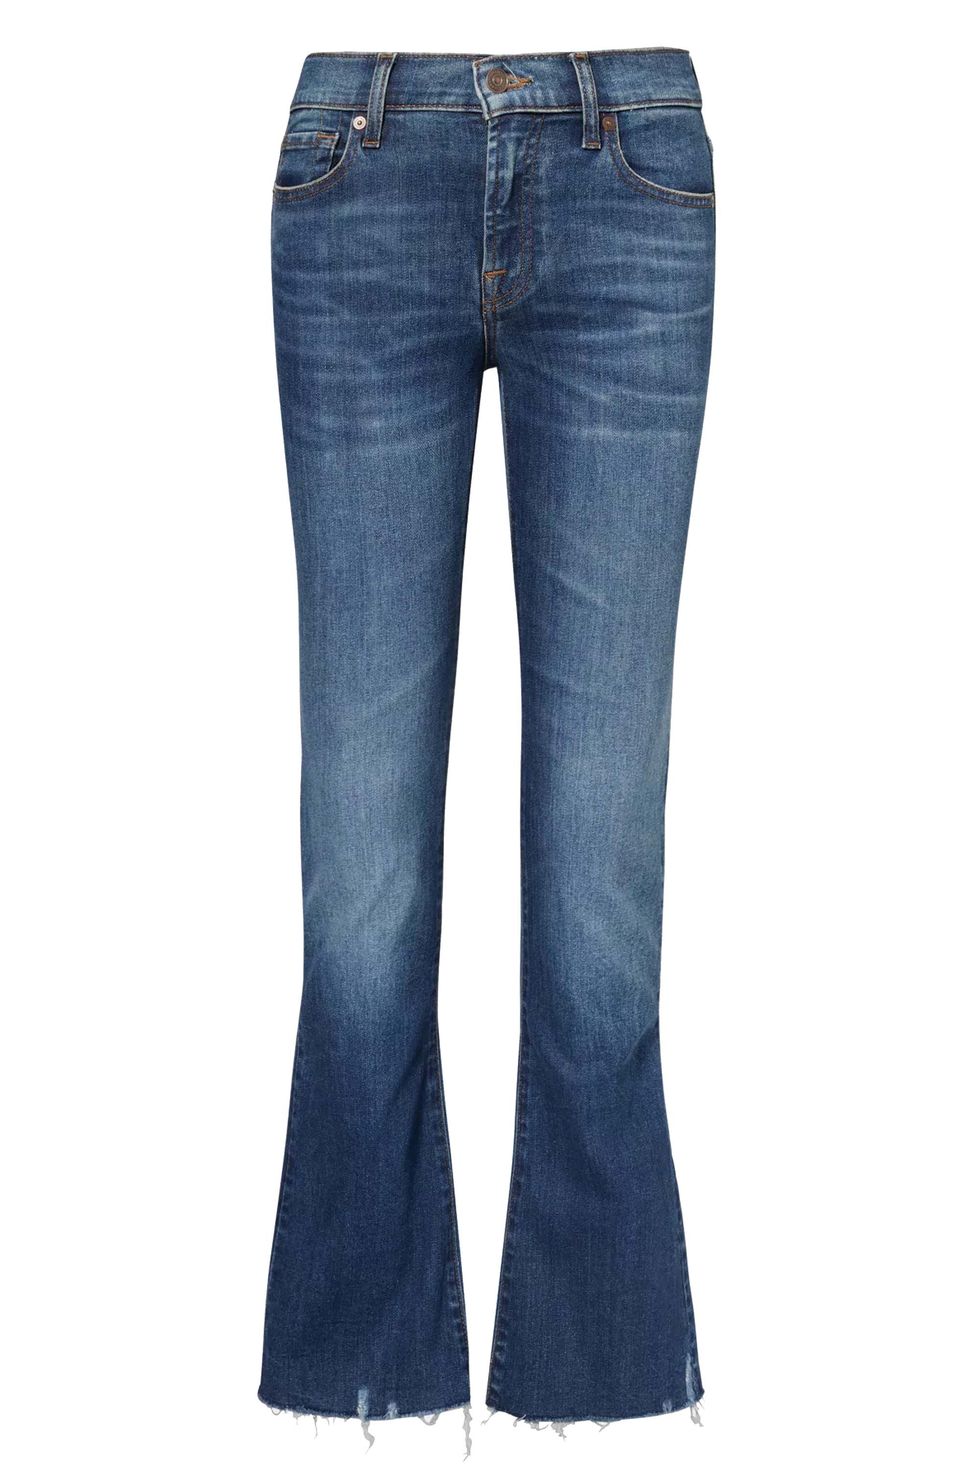 Эти джинсы с низкой посадкой стилизовать будет очень легко